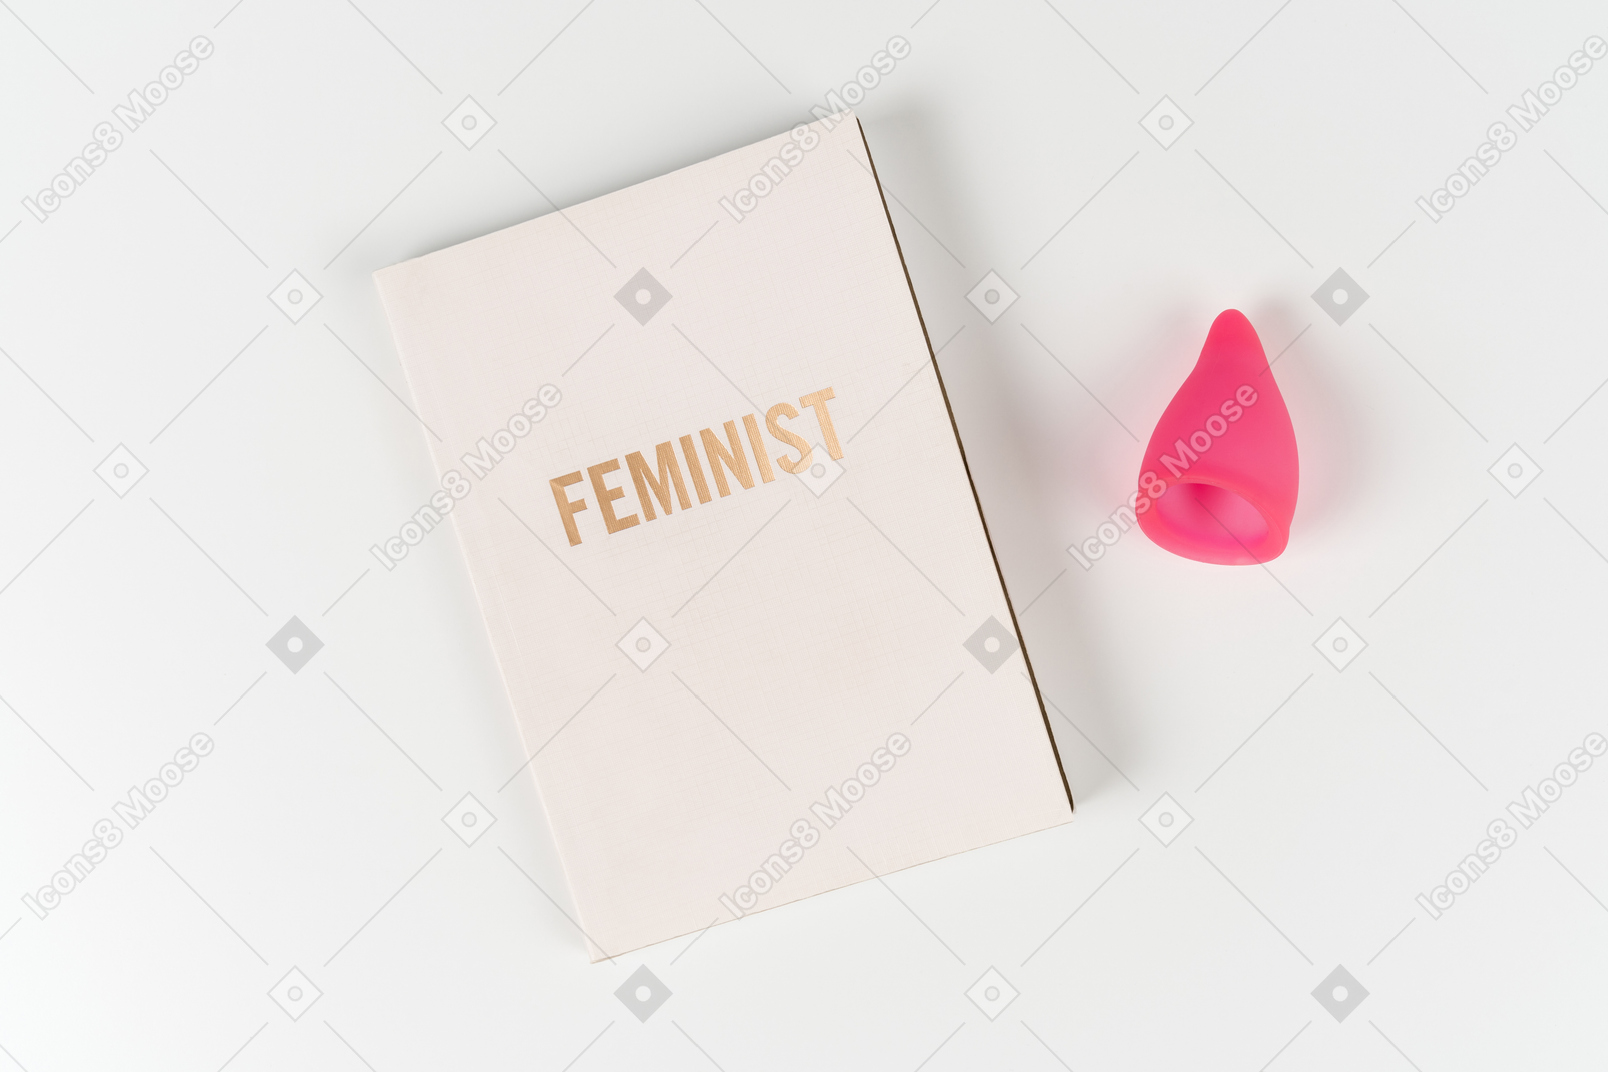 페미니스트 책과 흰색 배경에 생리 컵